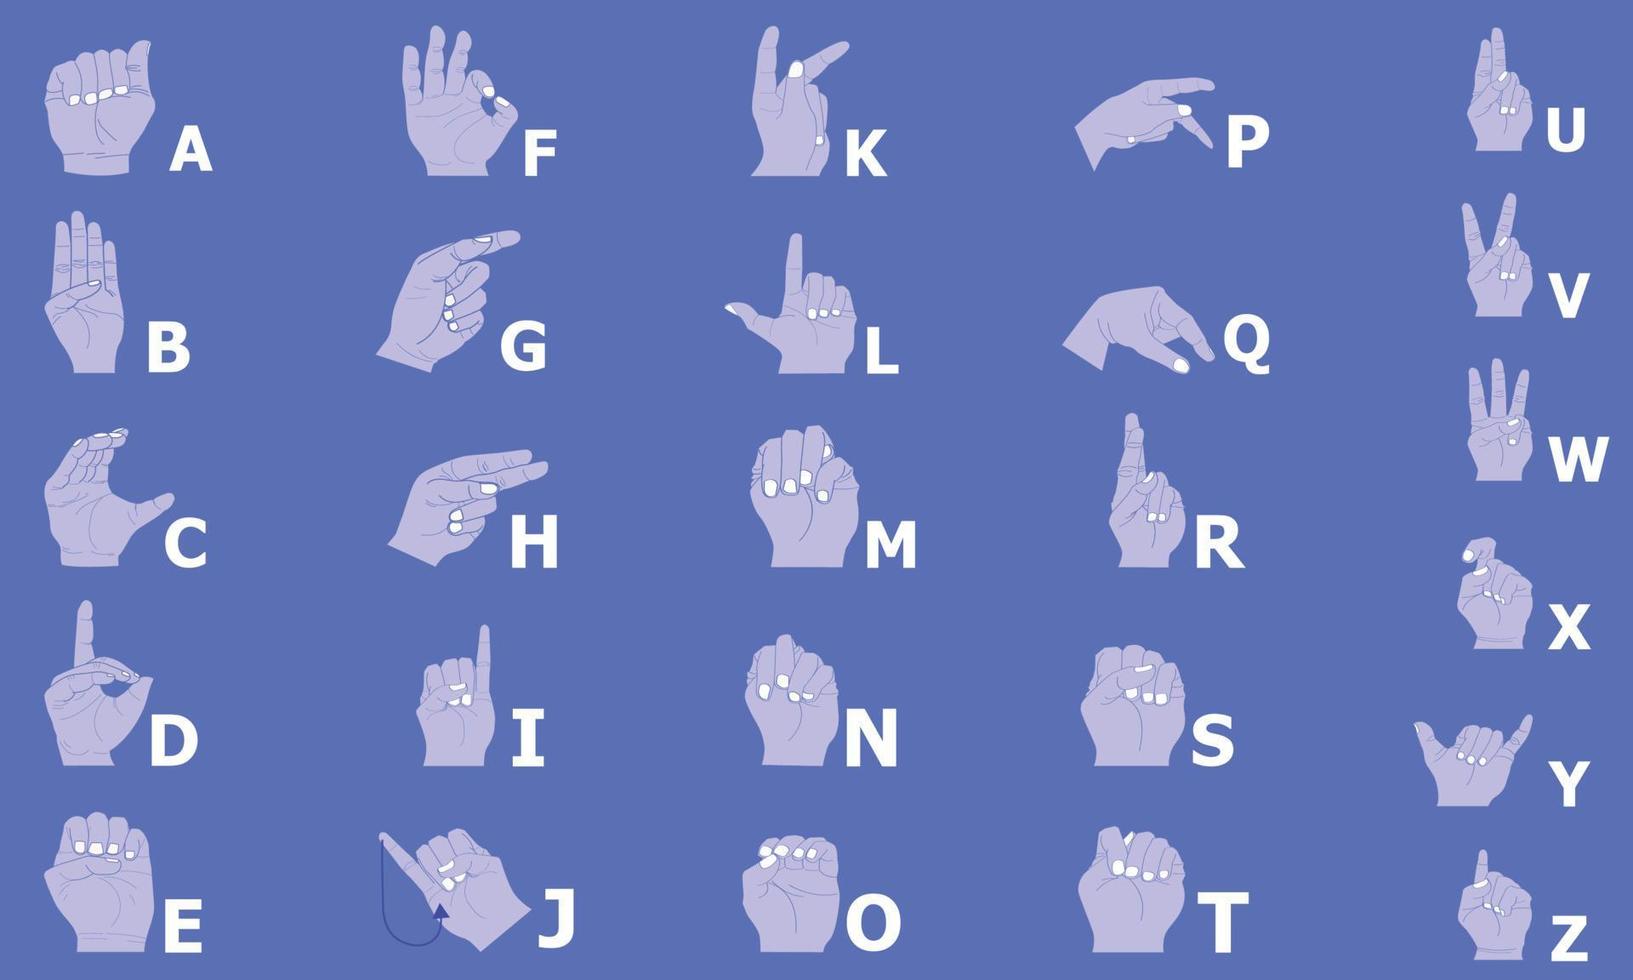 gebarentaal om letters van a tot z weer te geven. vector illustratie eps10